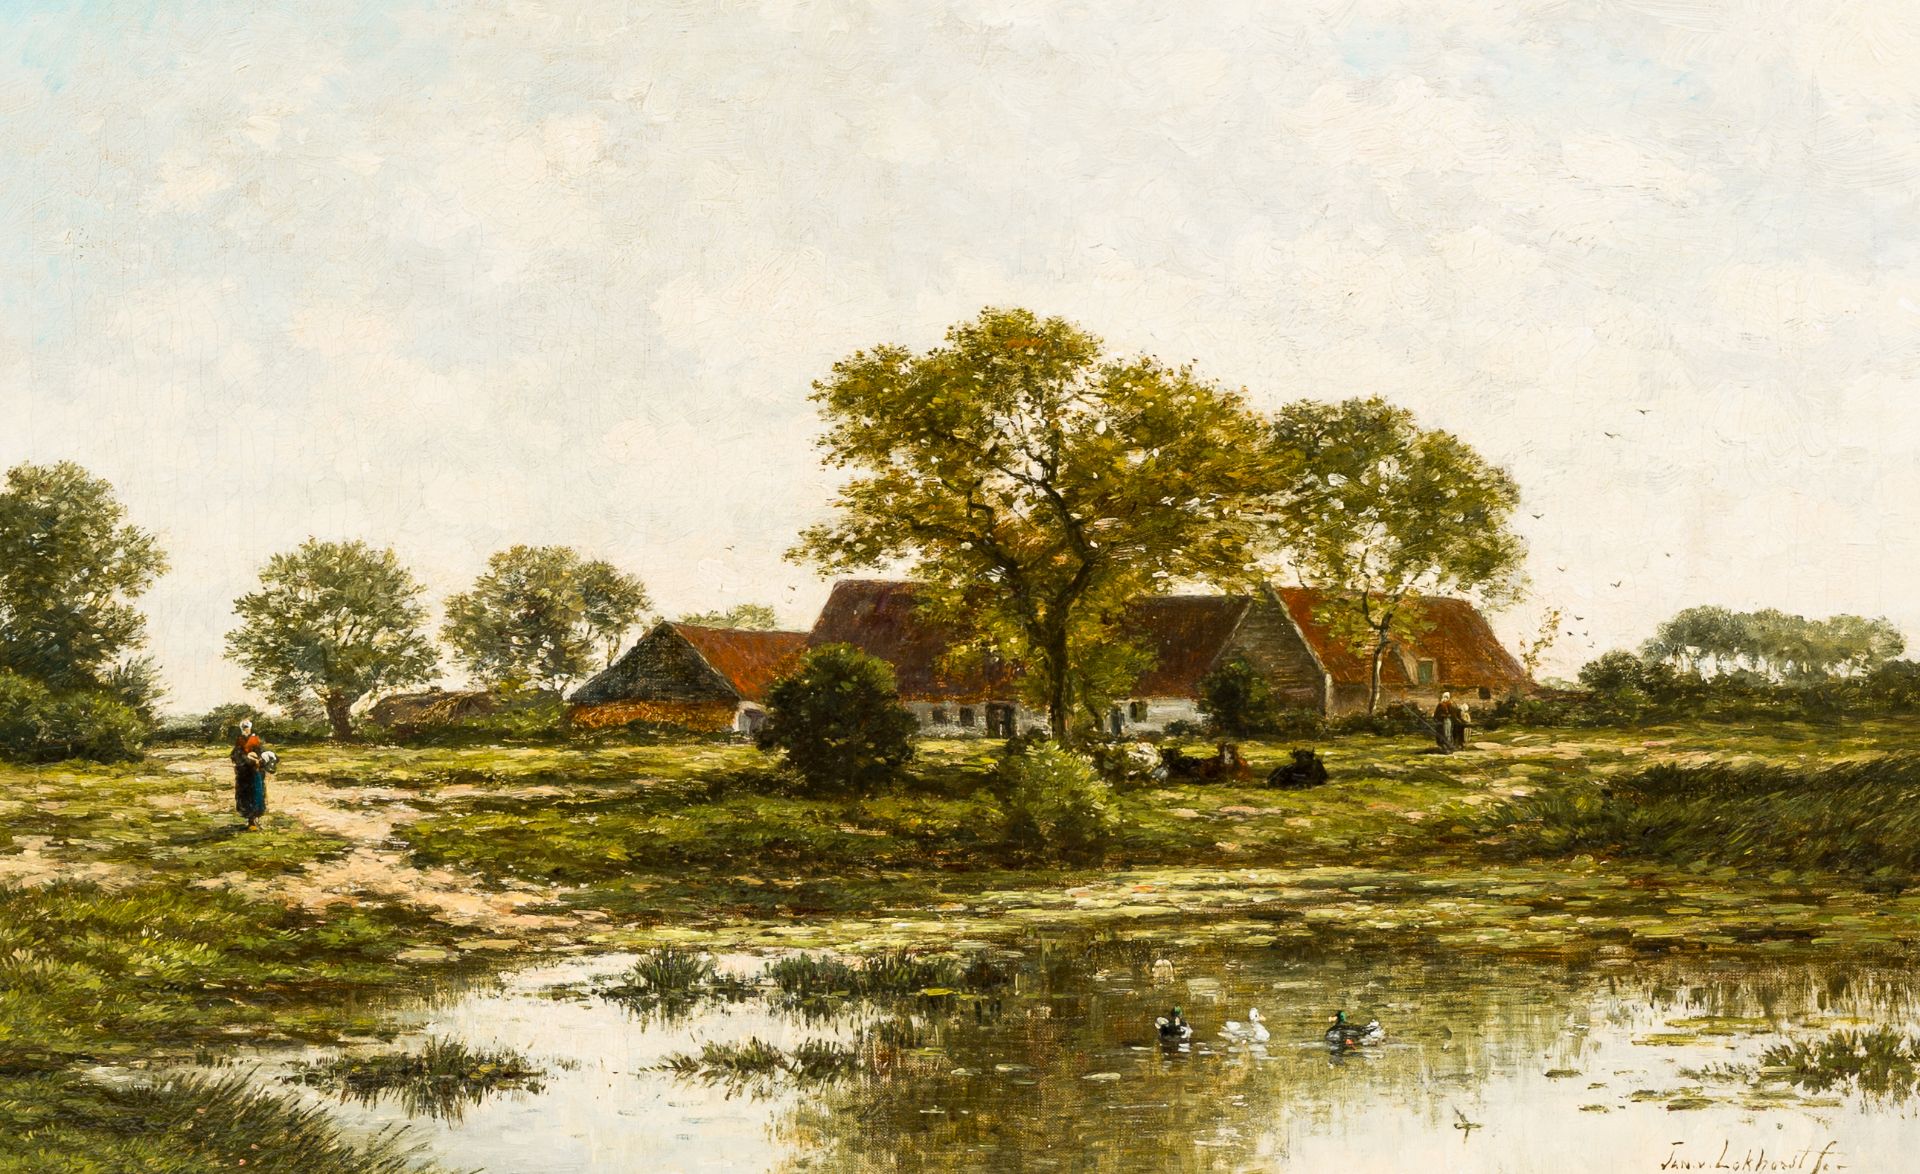 Johan Nicolaas (Jan) van Lokhorst (1837-1893): Animated landscape with a farm, oil on canvas